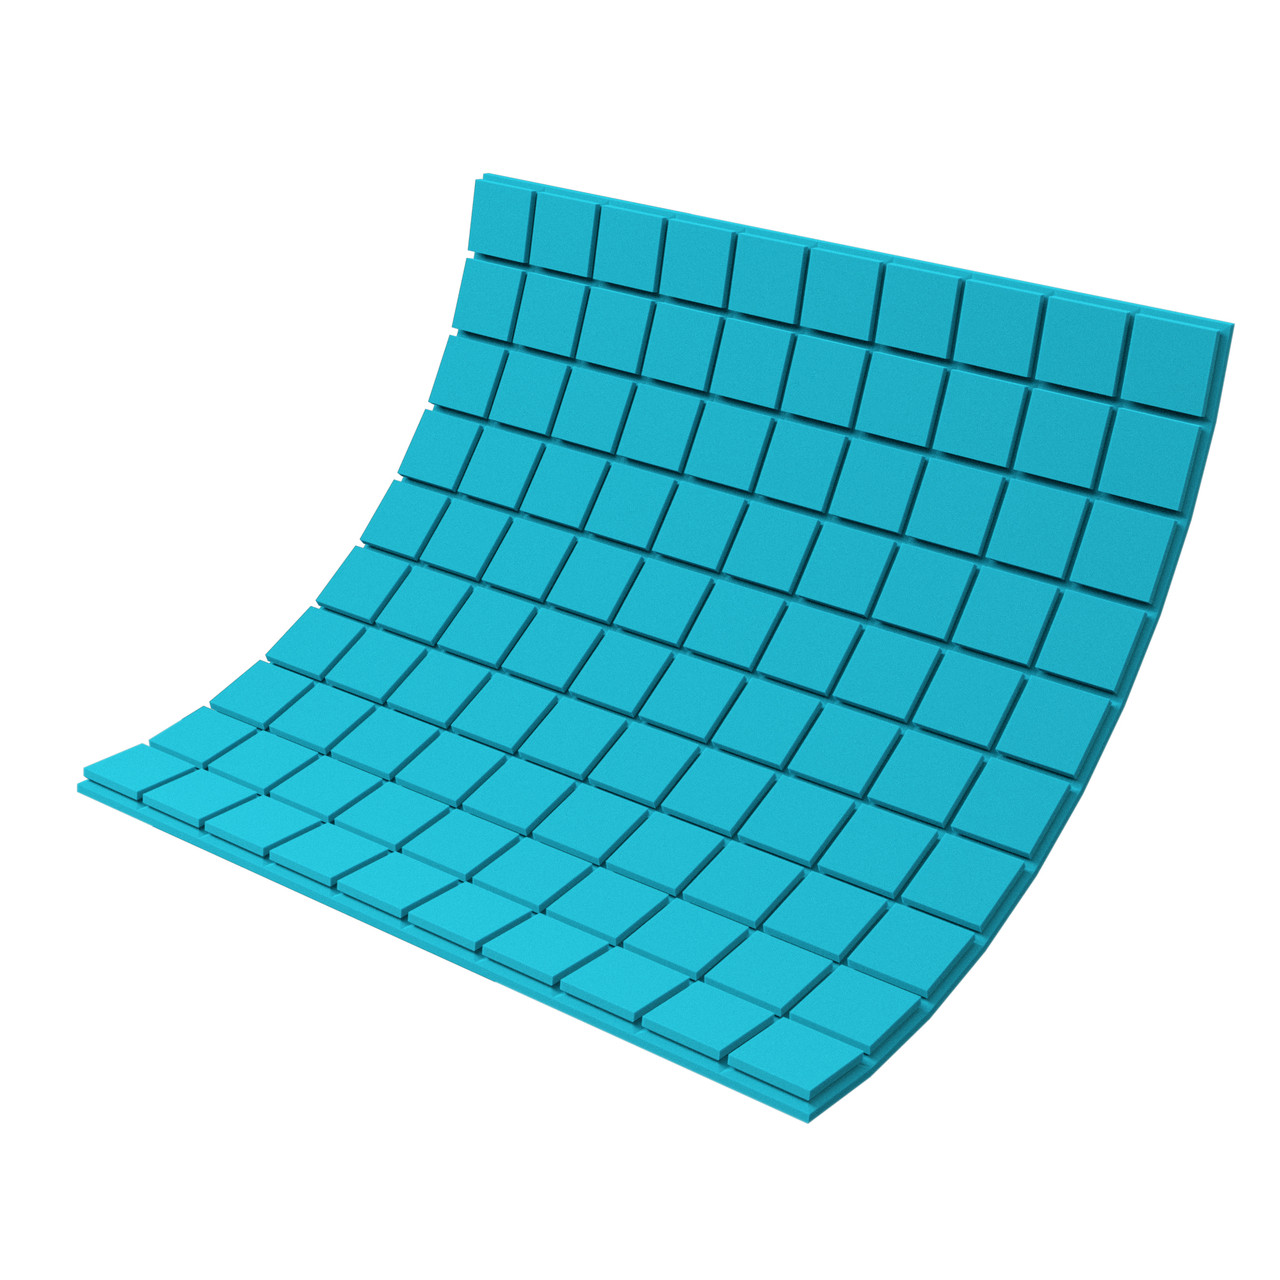 Панель из акустического поролона Ecosound Tetras Color толщиной 30 мм, размером 100х100 см, синего цвета